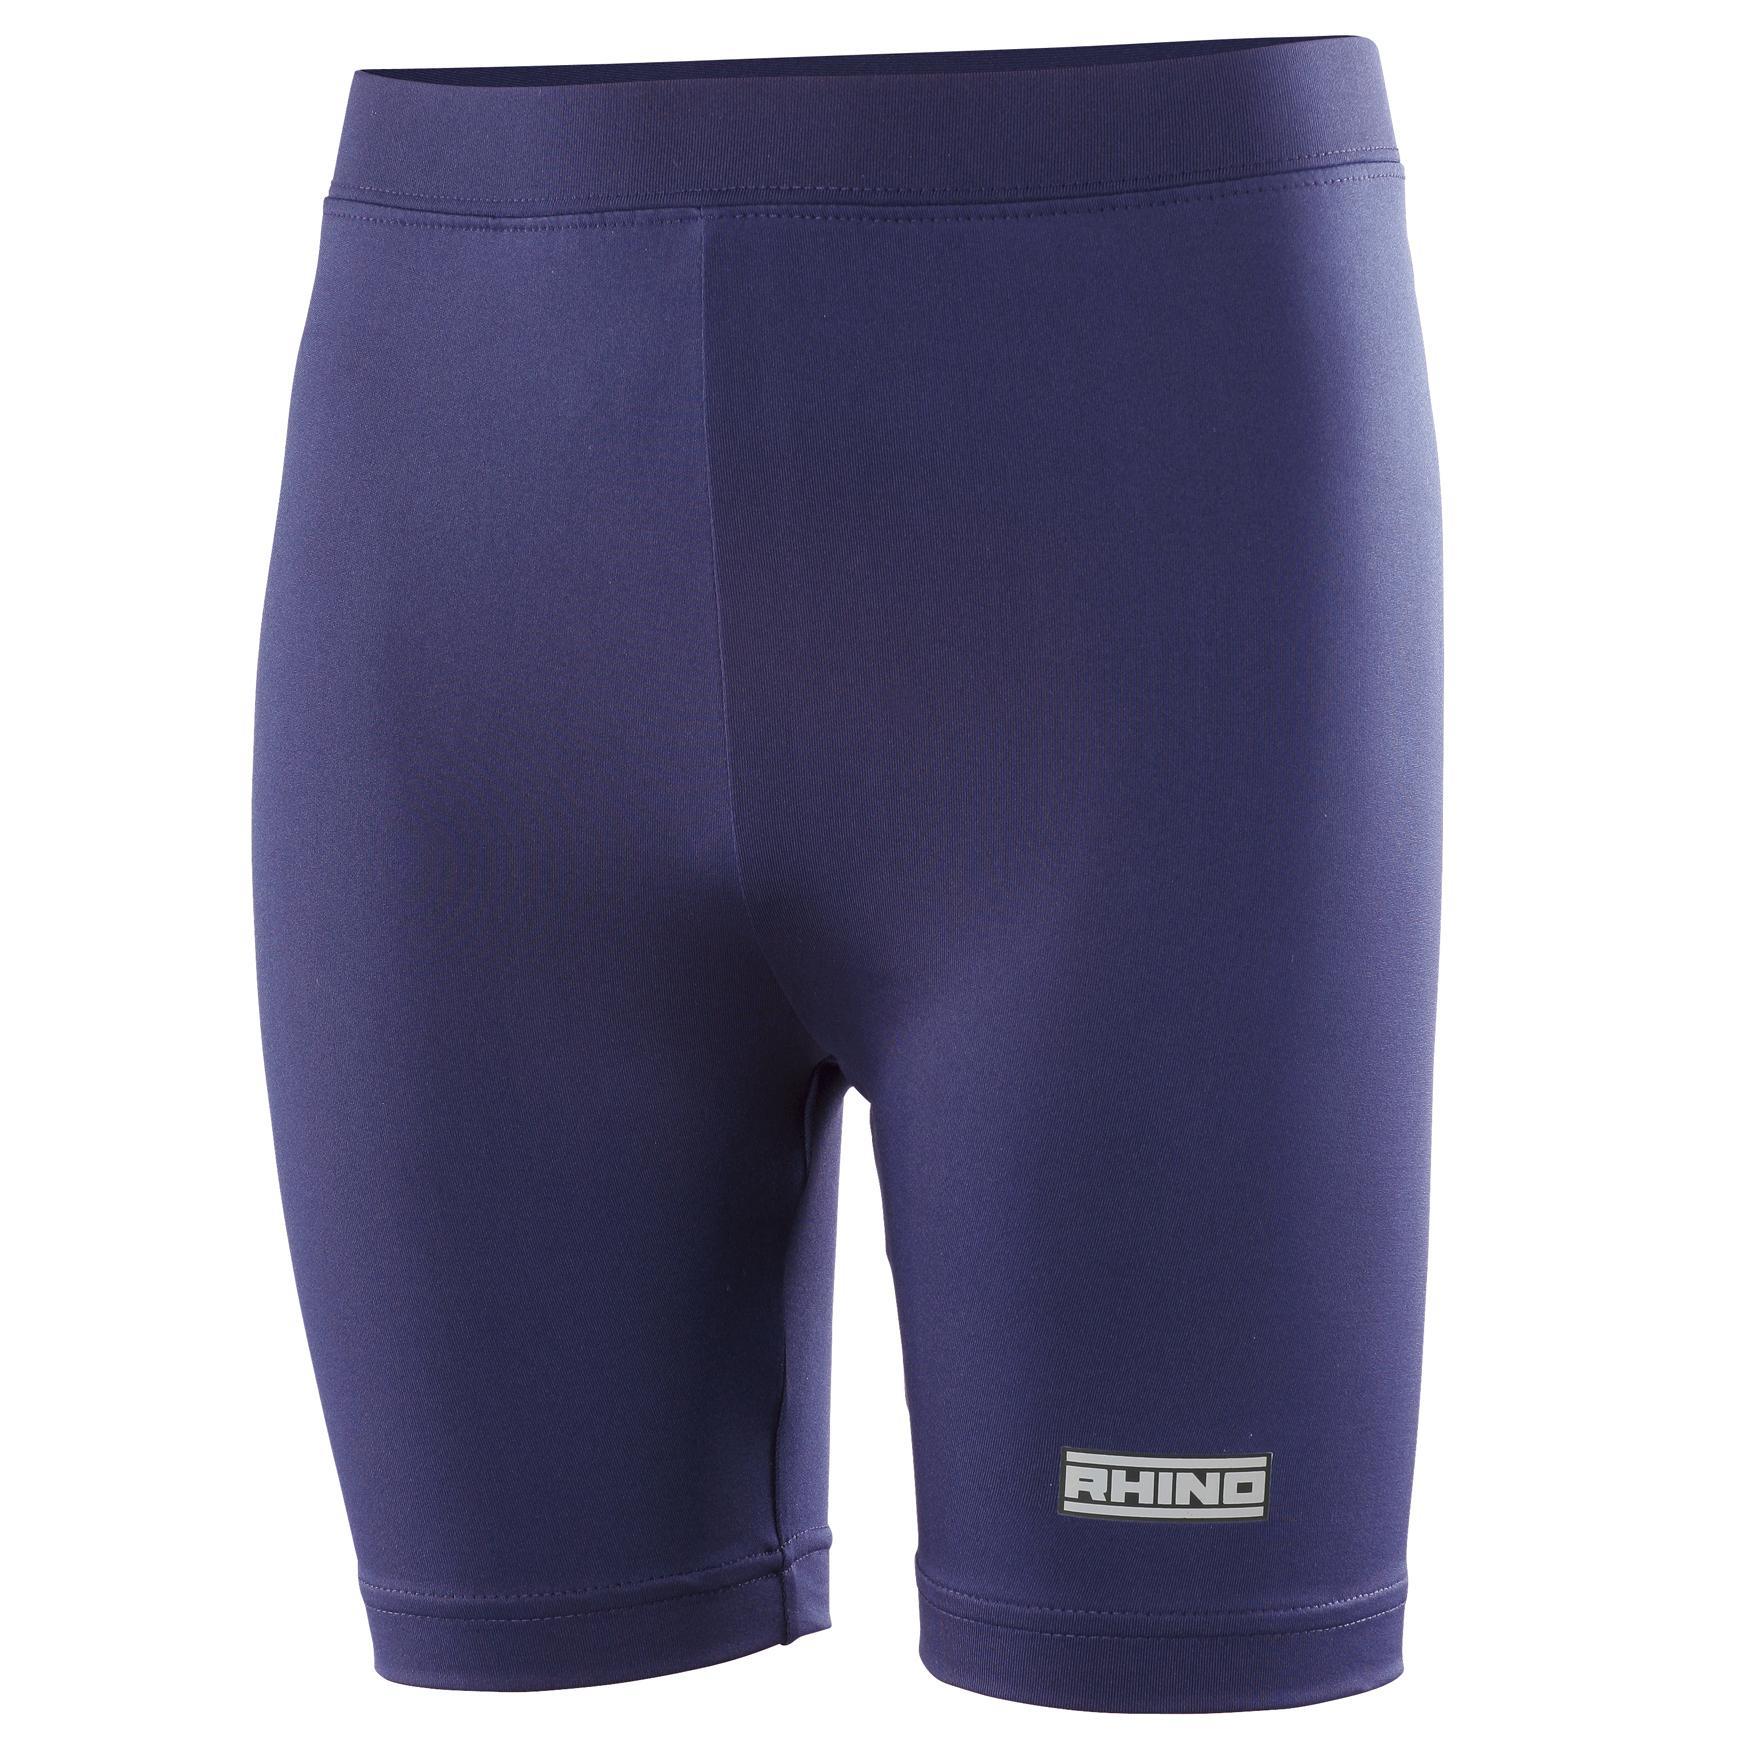 Rhino Childrens Boys Thermal Underwear Sports Base Layer Shorts (Navy) (XSY)